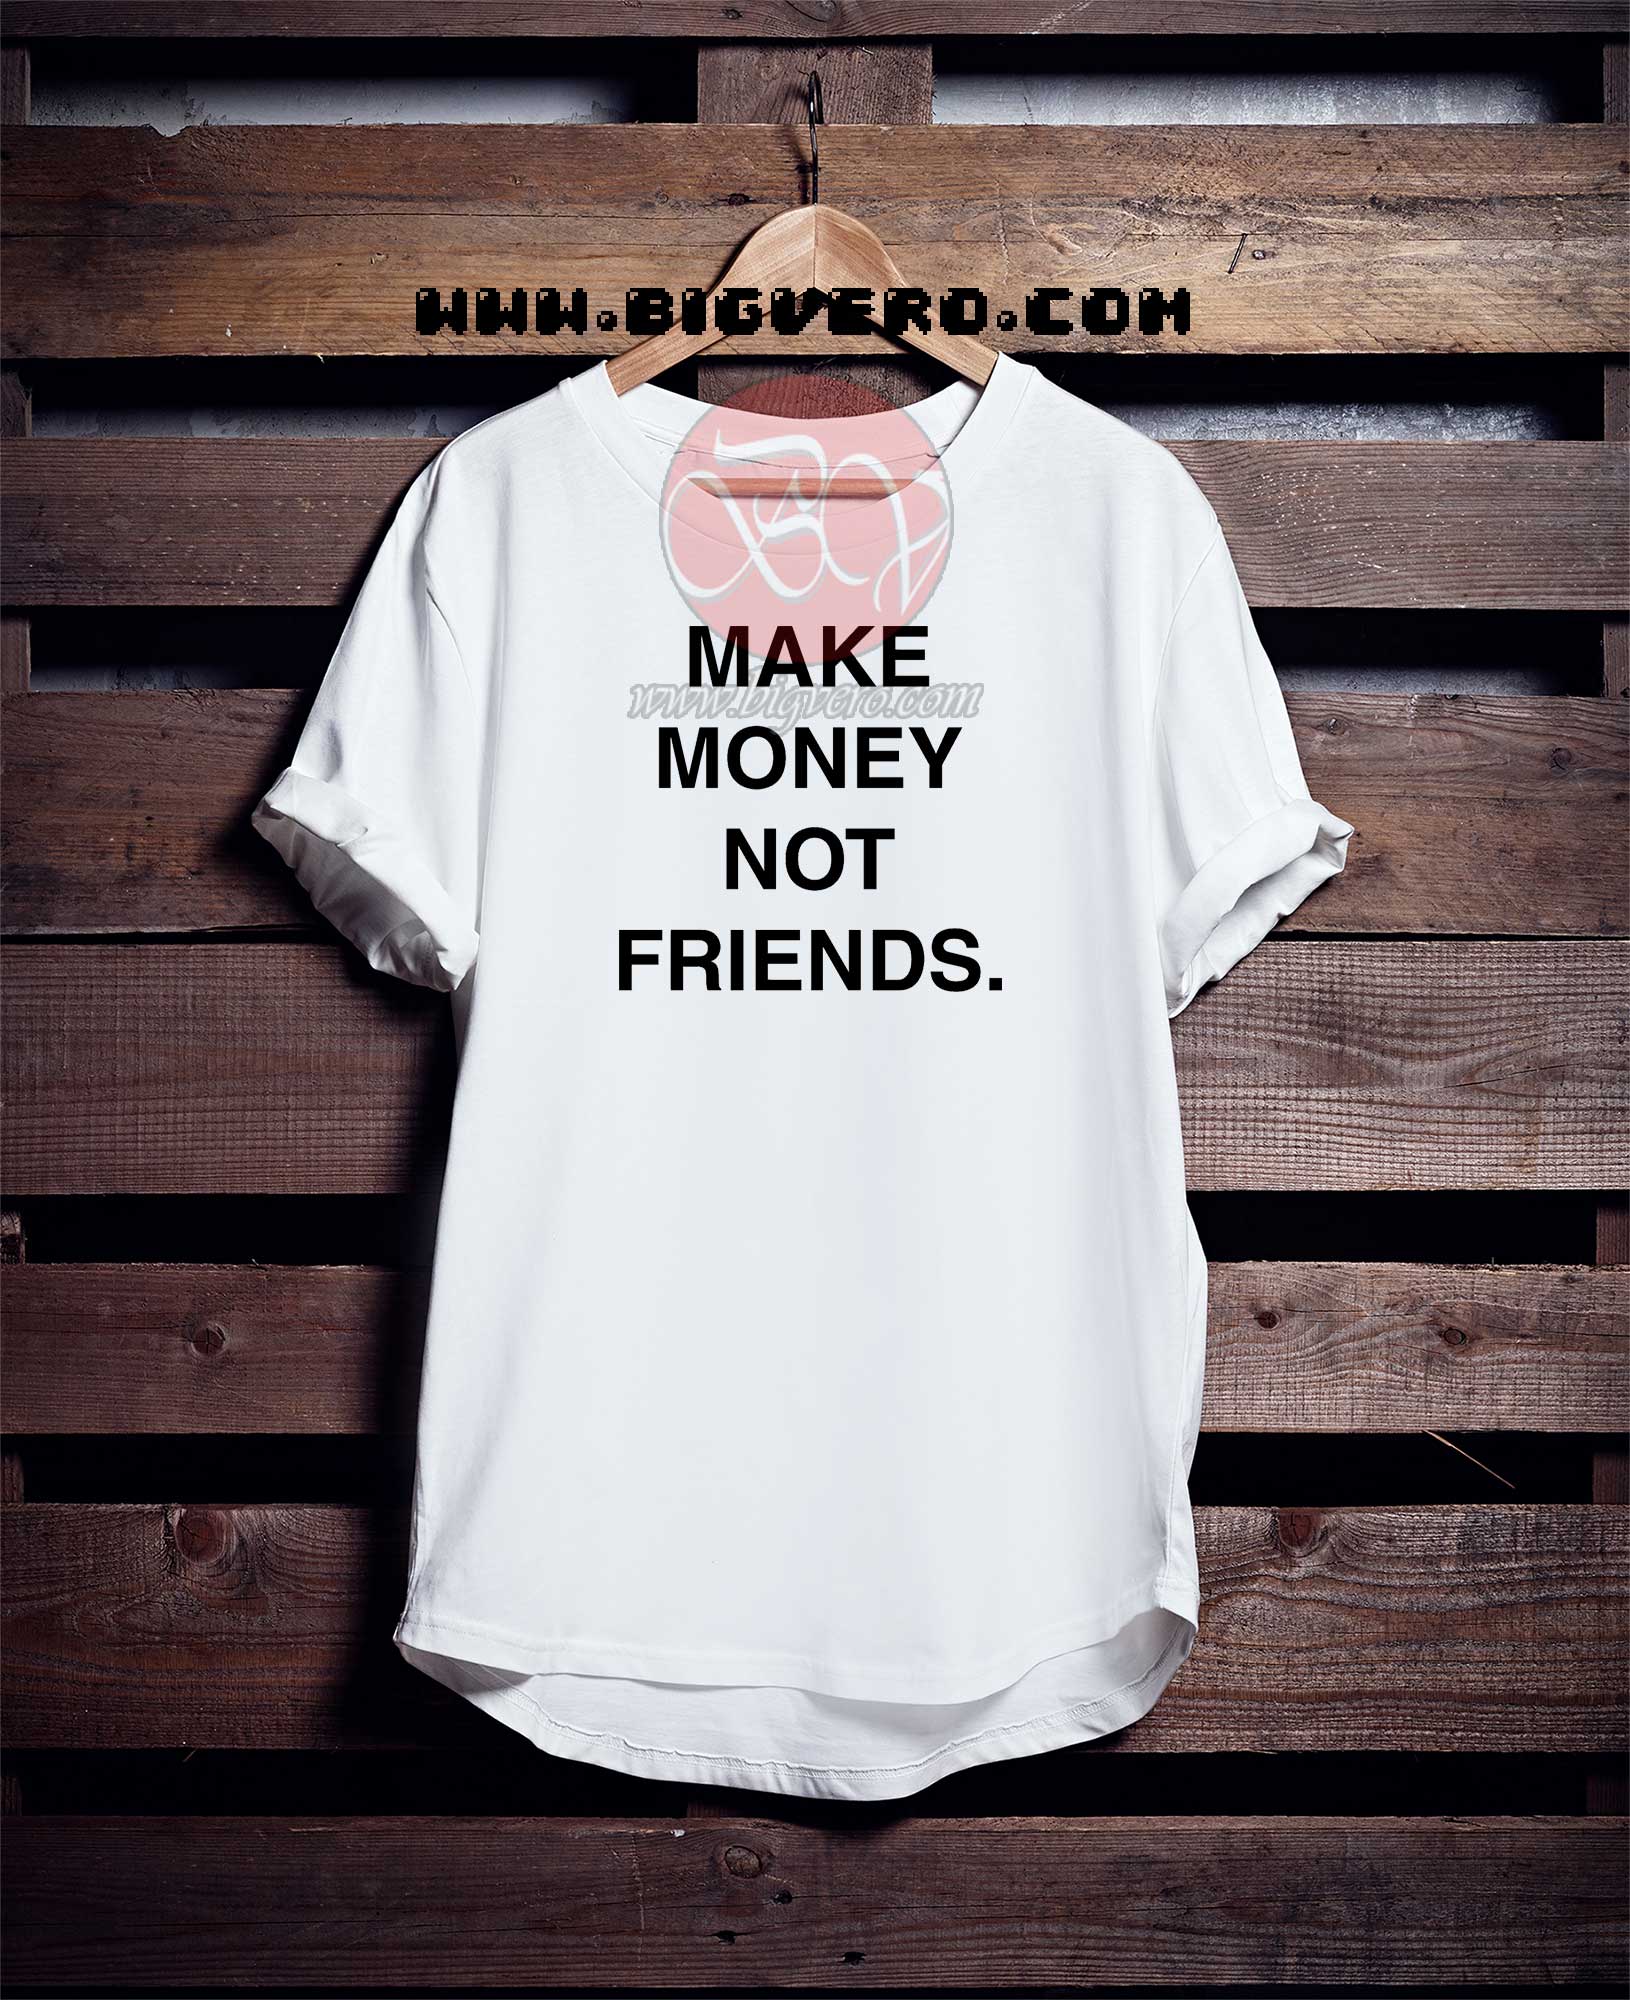 Money Not Friends Tshirt, - Cool Tshirt Designs - Bigvero.com